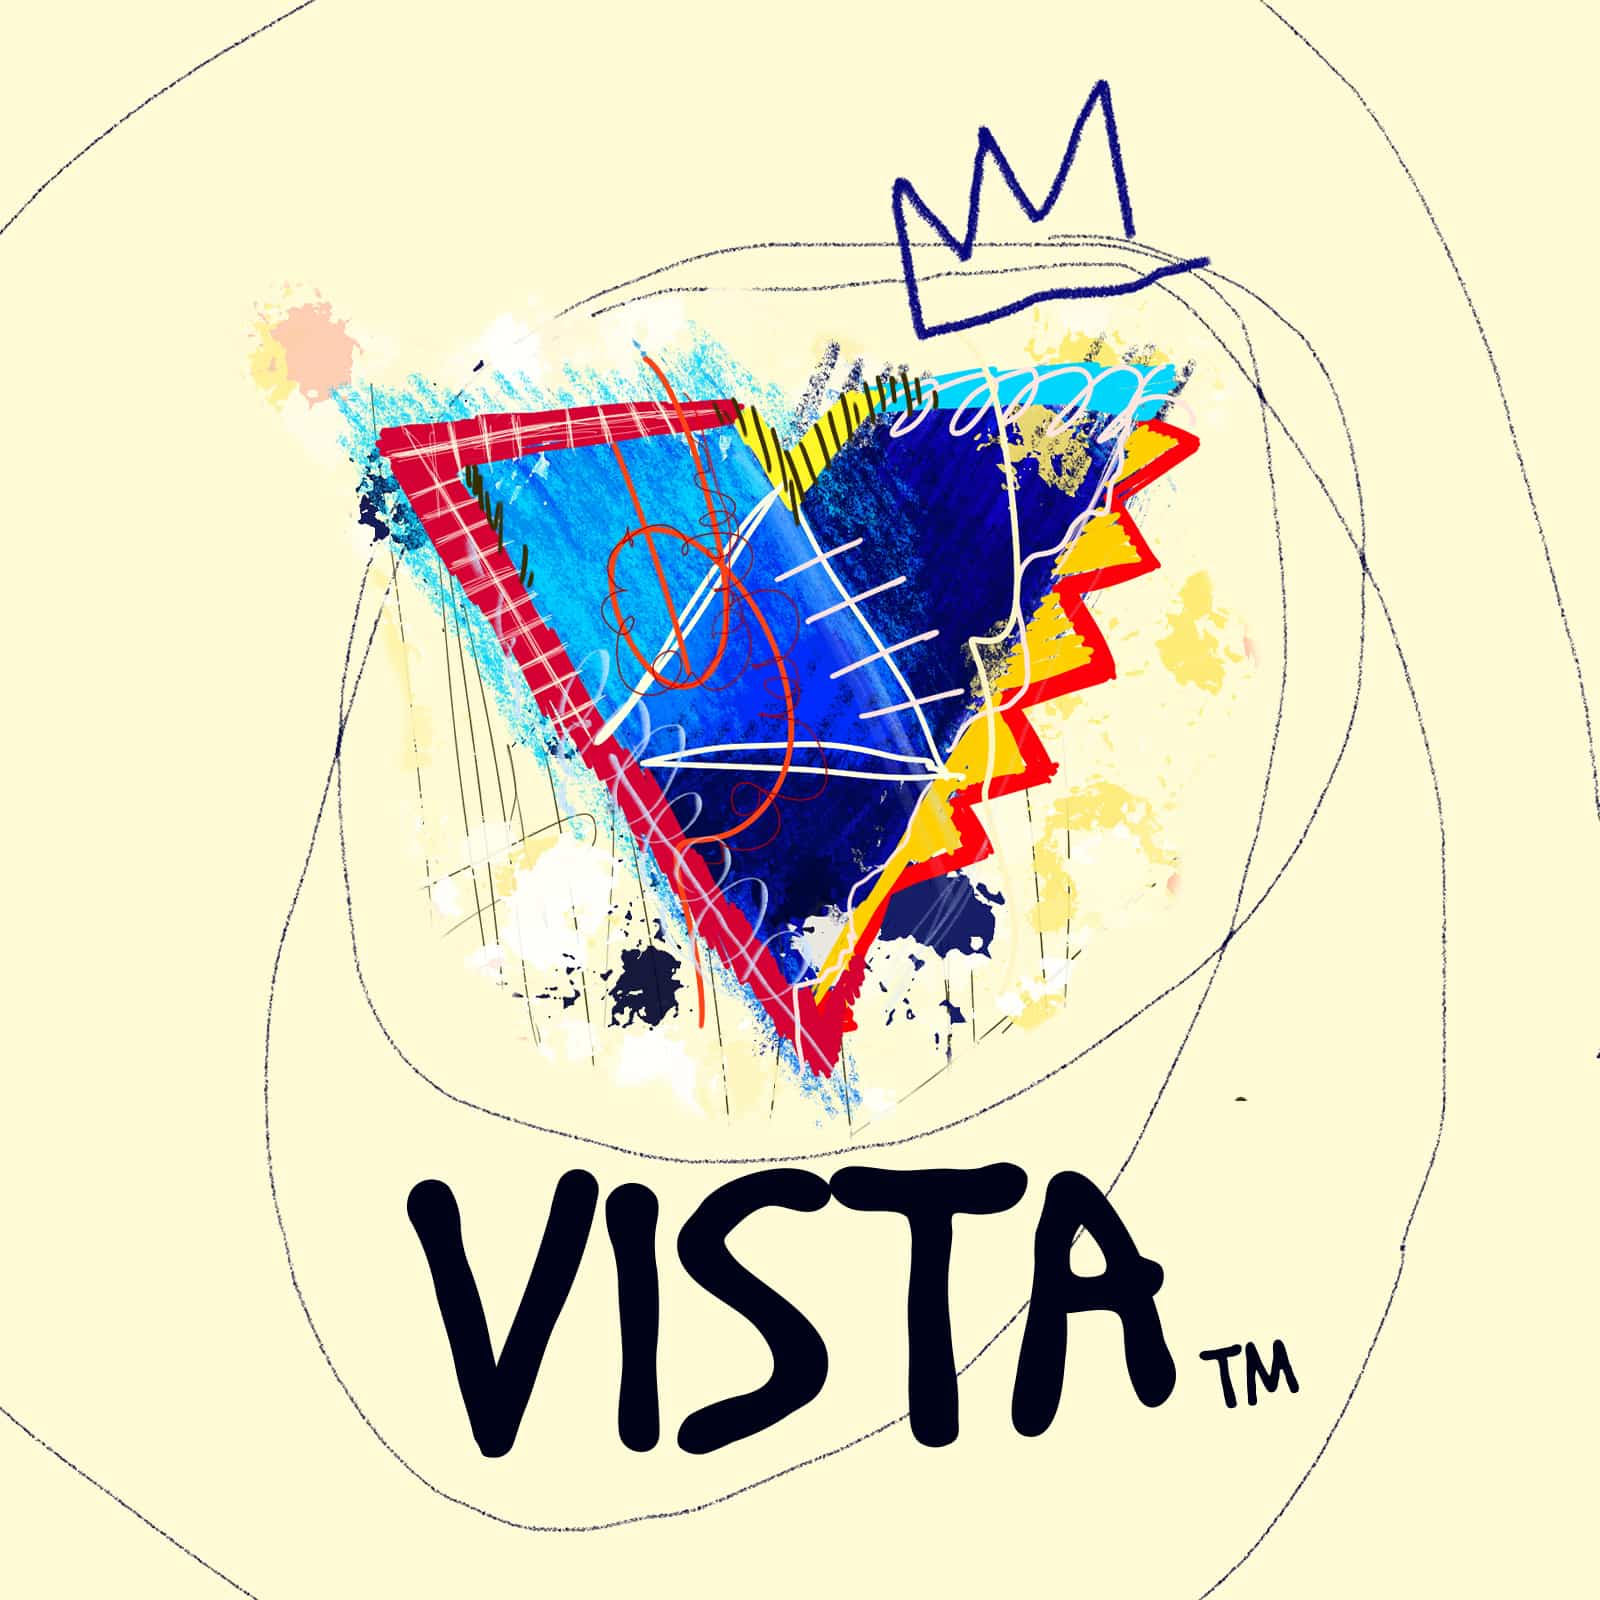 Basquiats handgezeichneter Grafitti-Stil verknüpfte kulturelle Strömungen und verschiedene Kunstrichtungen. Seine Sexualität soll ähnlich fluide gewesen sein, wie seine Kunst. CCdesign visualisierte in seinem Stil das Vista Logo – eine Gelegenheit für 99designs, auf die LGBTQIA+ Politik der eigenen Firma aufmerksam zu machen. 